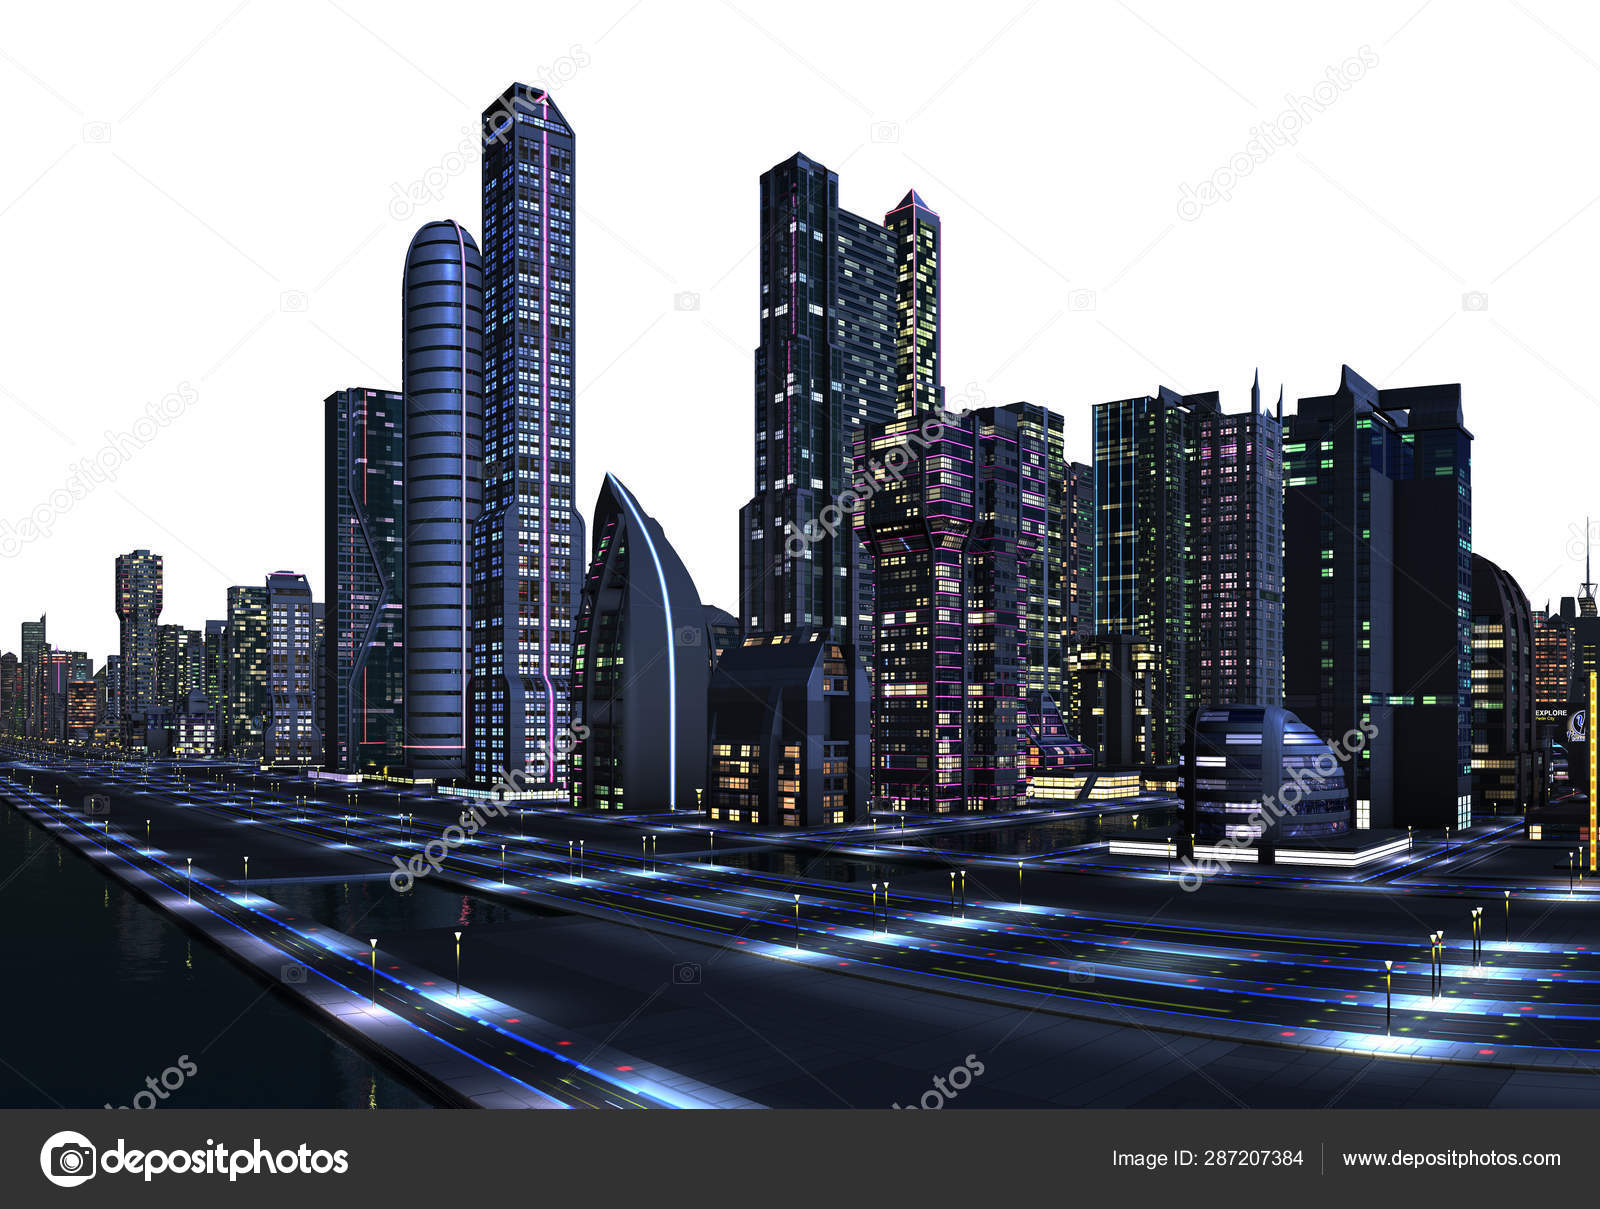 Thành phố tương lai: Hãy dạo quanh trong thành phố tương lai đầy mơ ước và kì vĩ trong hình ảnh đầy sắc màu. Đây là một bức tranh tuyệt đẹp về tương lai của nhân loại và một nguồn cảm hứng cho những giấc mơ về tương lai.